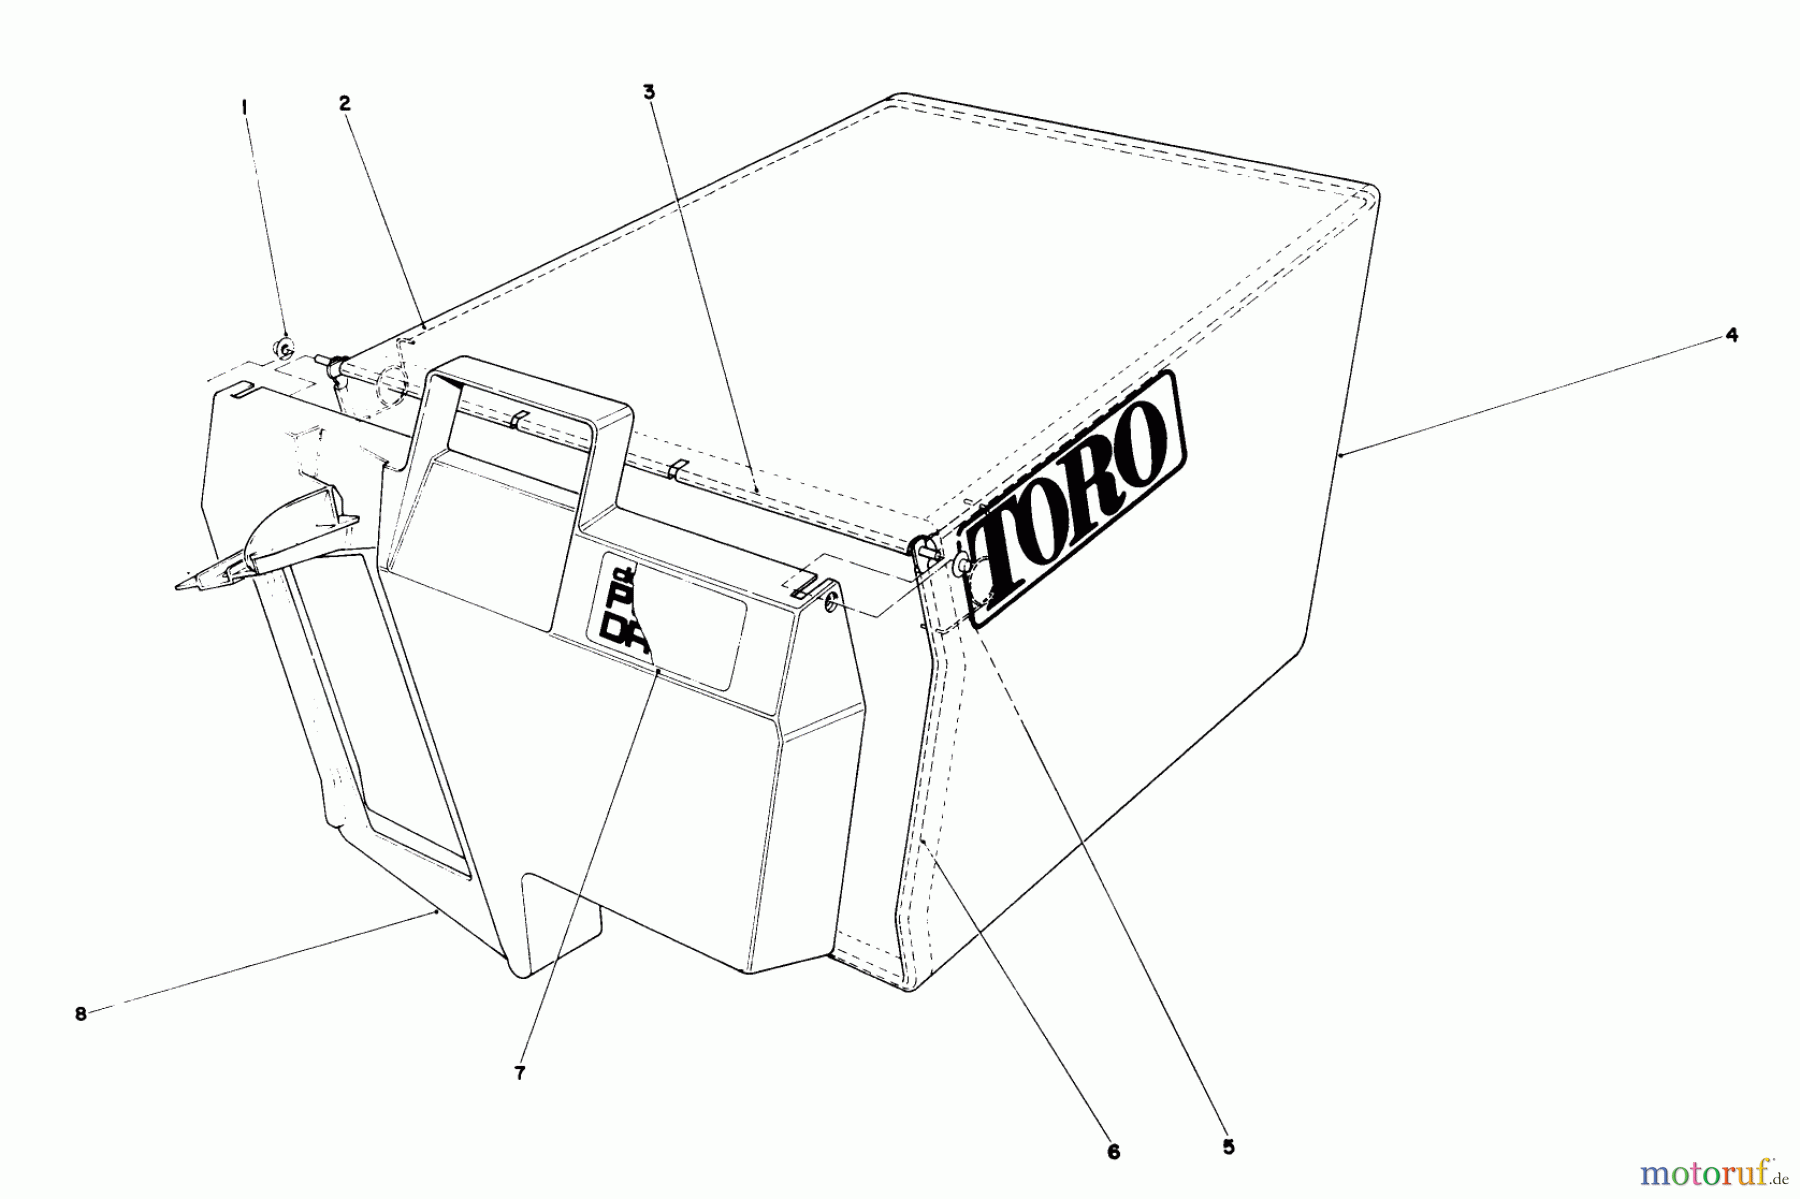  Toro Neu Mowers, Walk-Behind Seite 1 20677 - Toro Lawnmower, 1990 (0002102-0999999) GRASS BAG ASSEMBLY NO. 43-0018